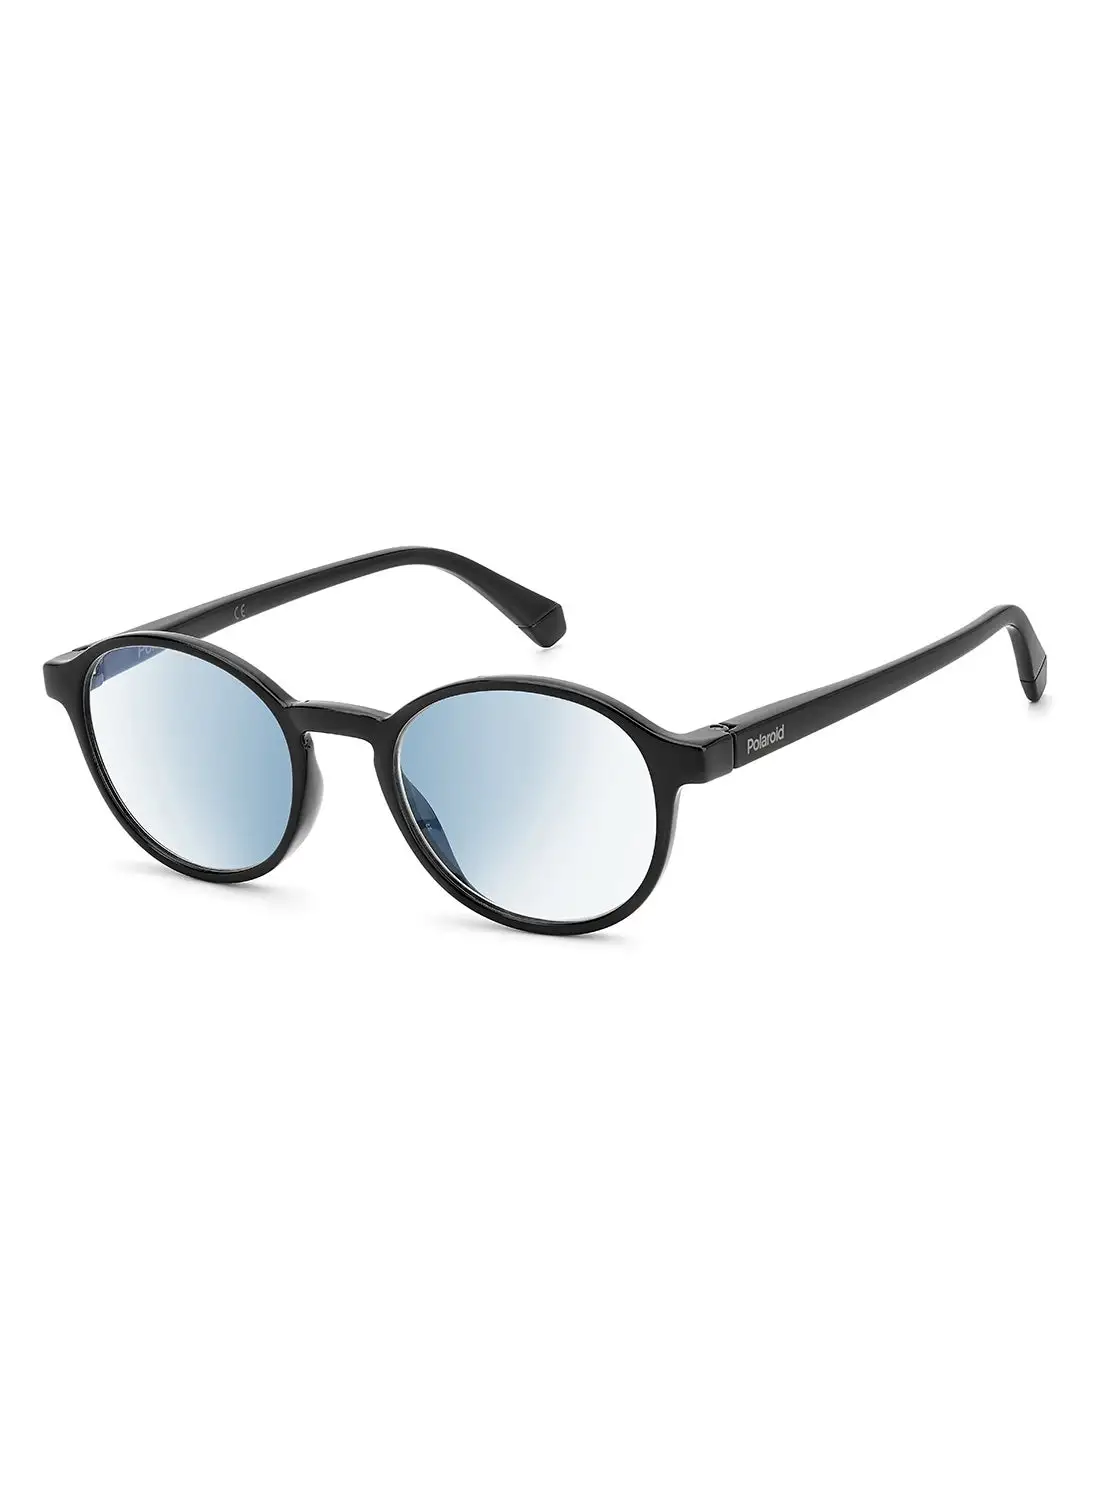 نظارات القراءة بولارويد للجنسين - PLD 0034/R/Bb أسود 48 - مقاس العدسة: 48 ملم